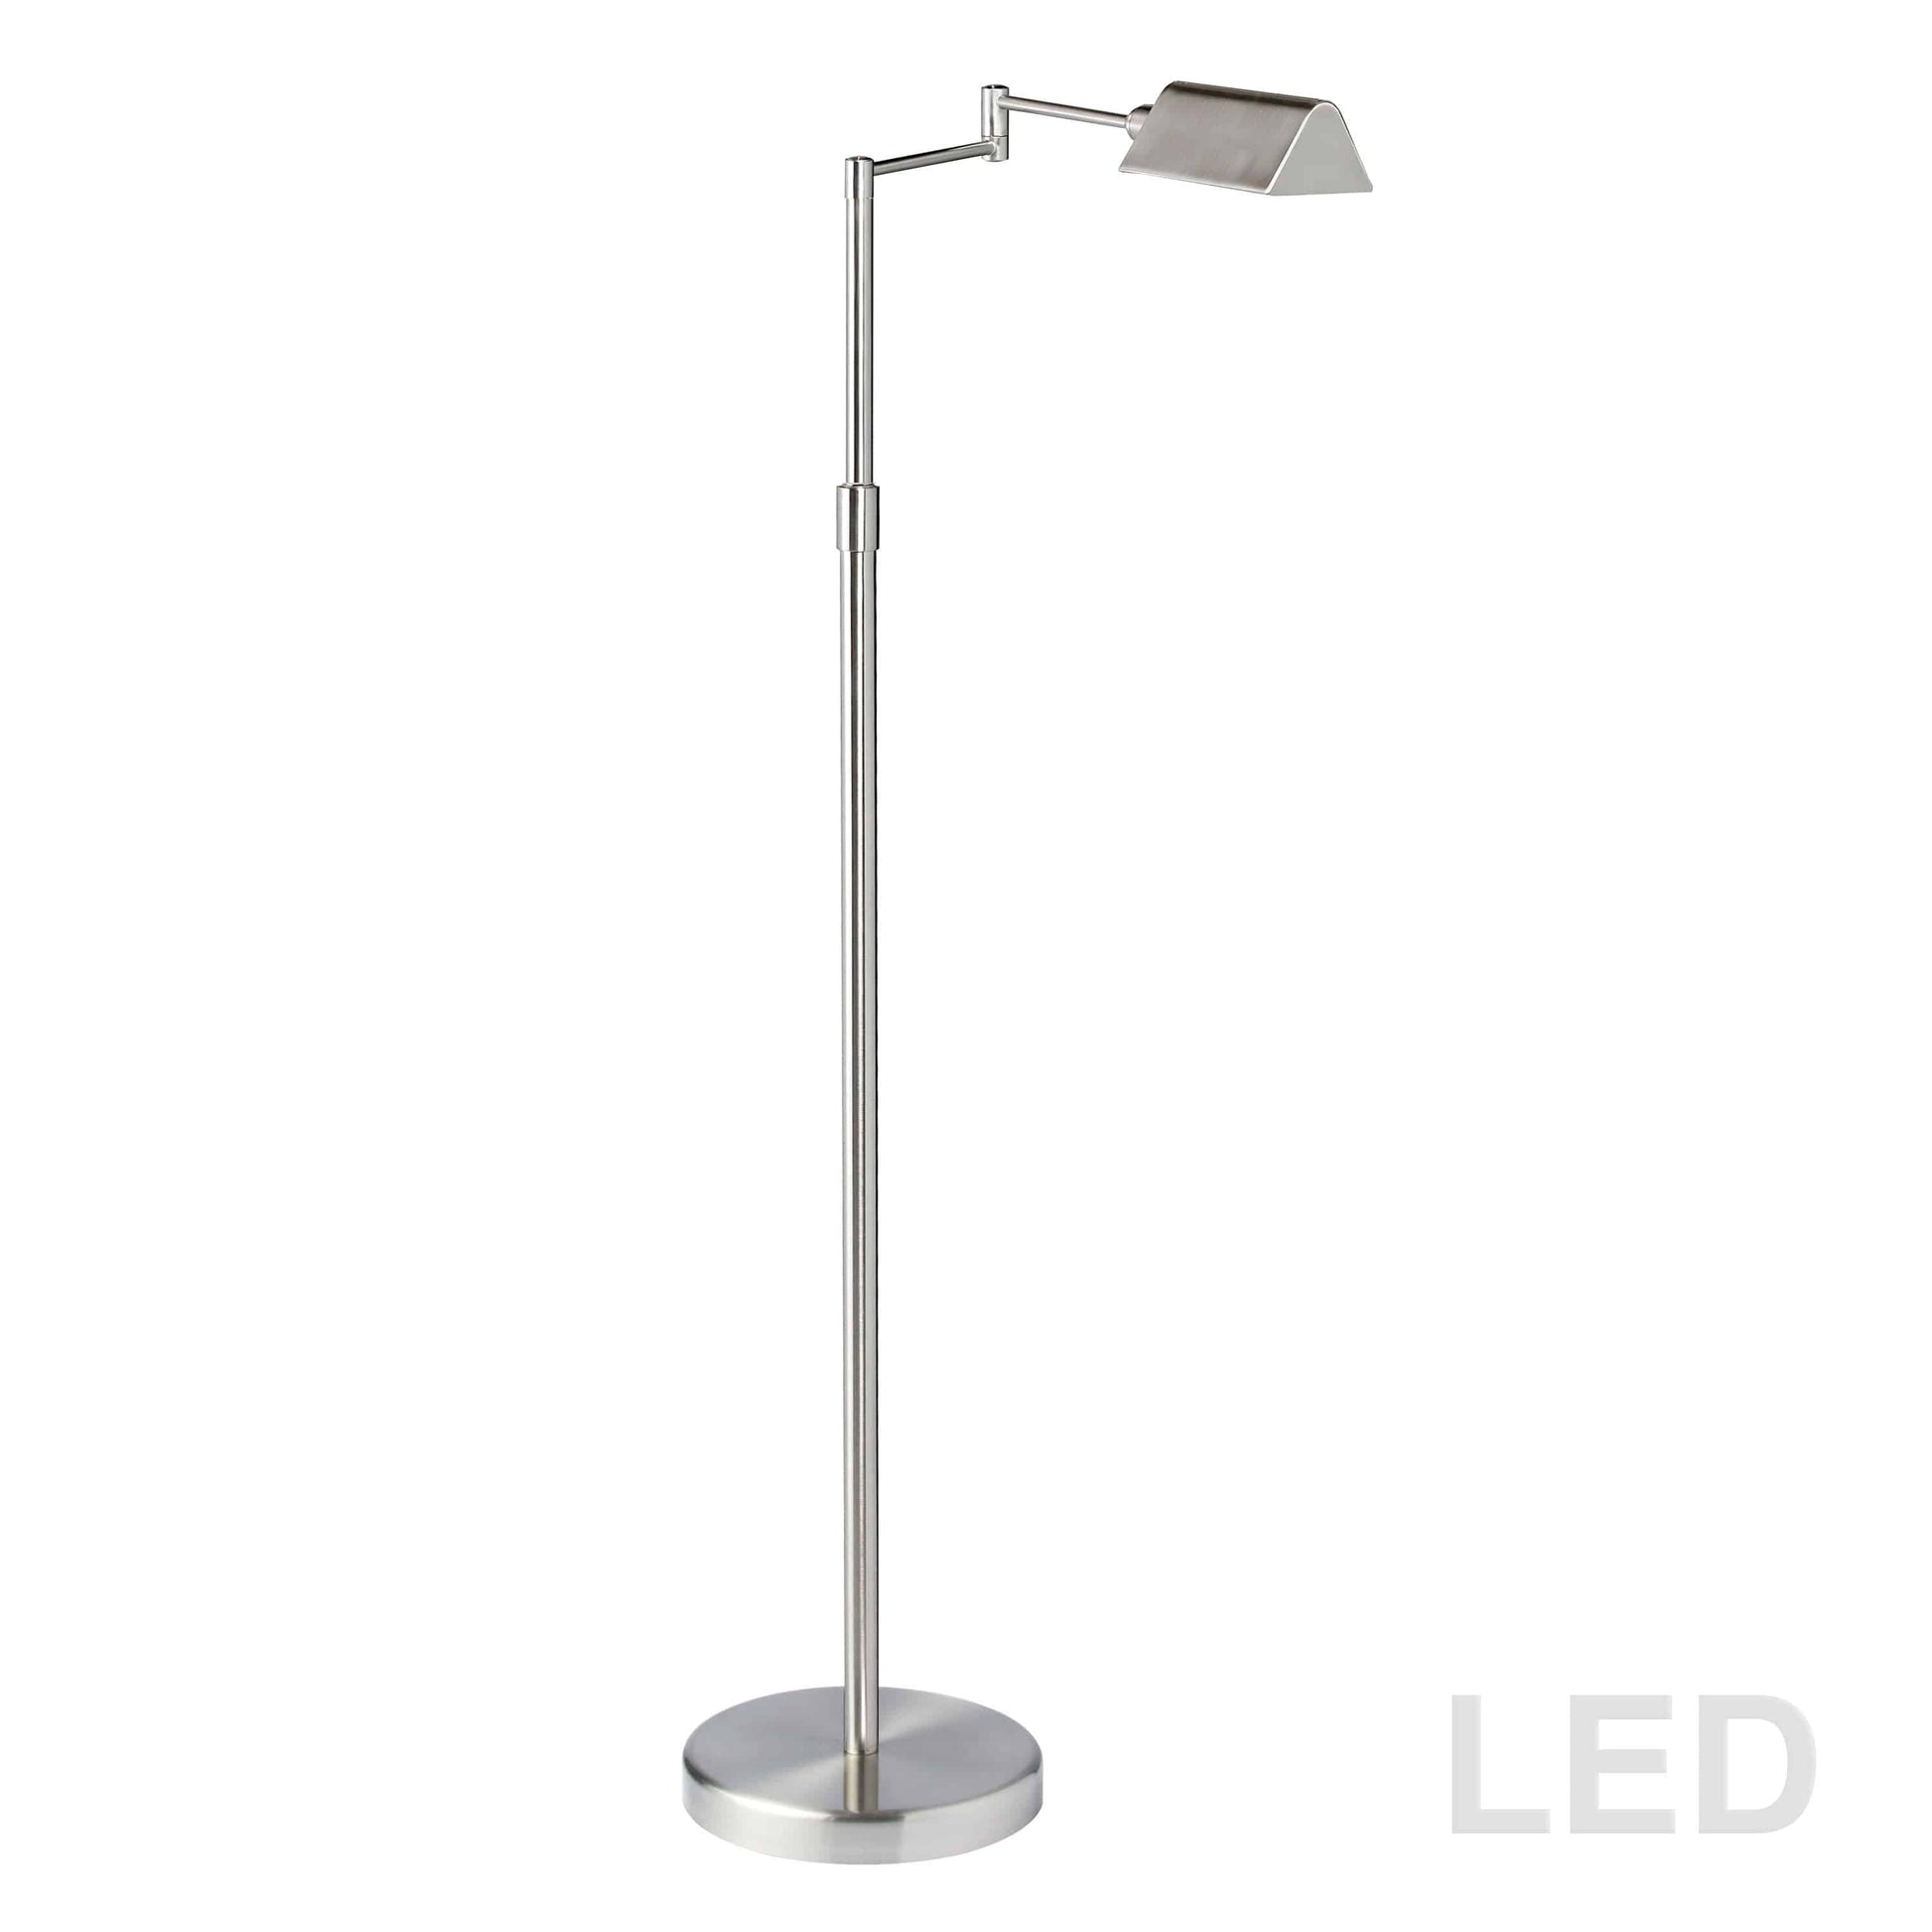 Dainolite 9W LED Swing Arm Floor Lamp, Satin Nickel Finish - Renoz